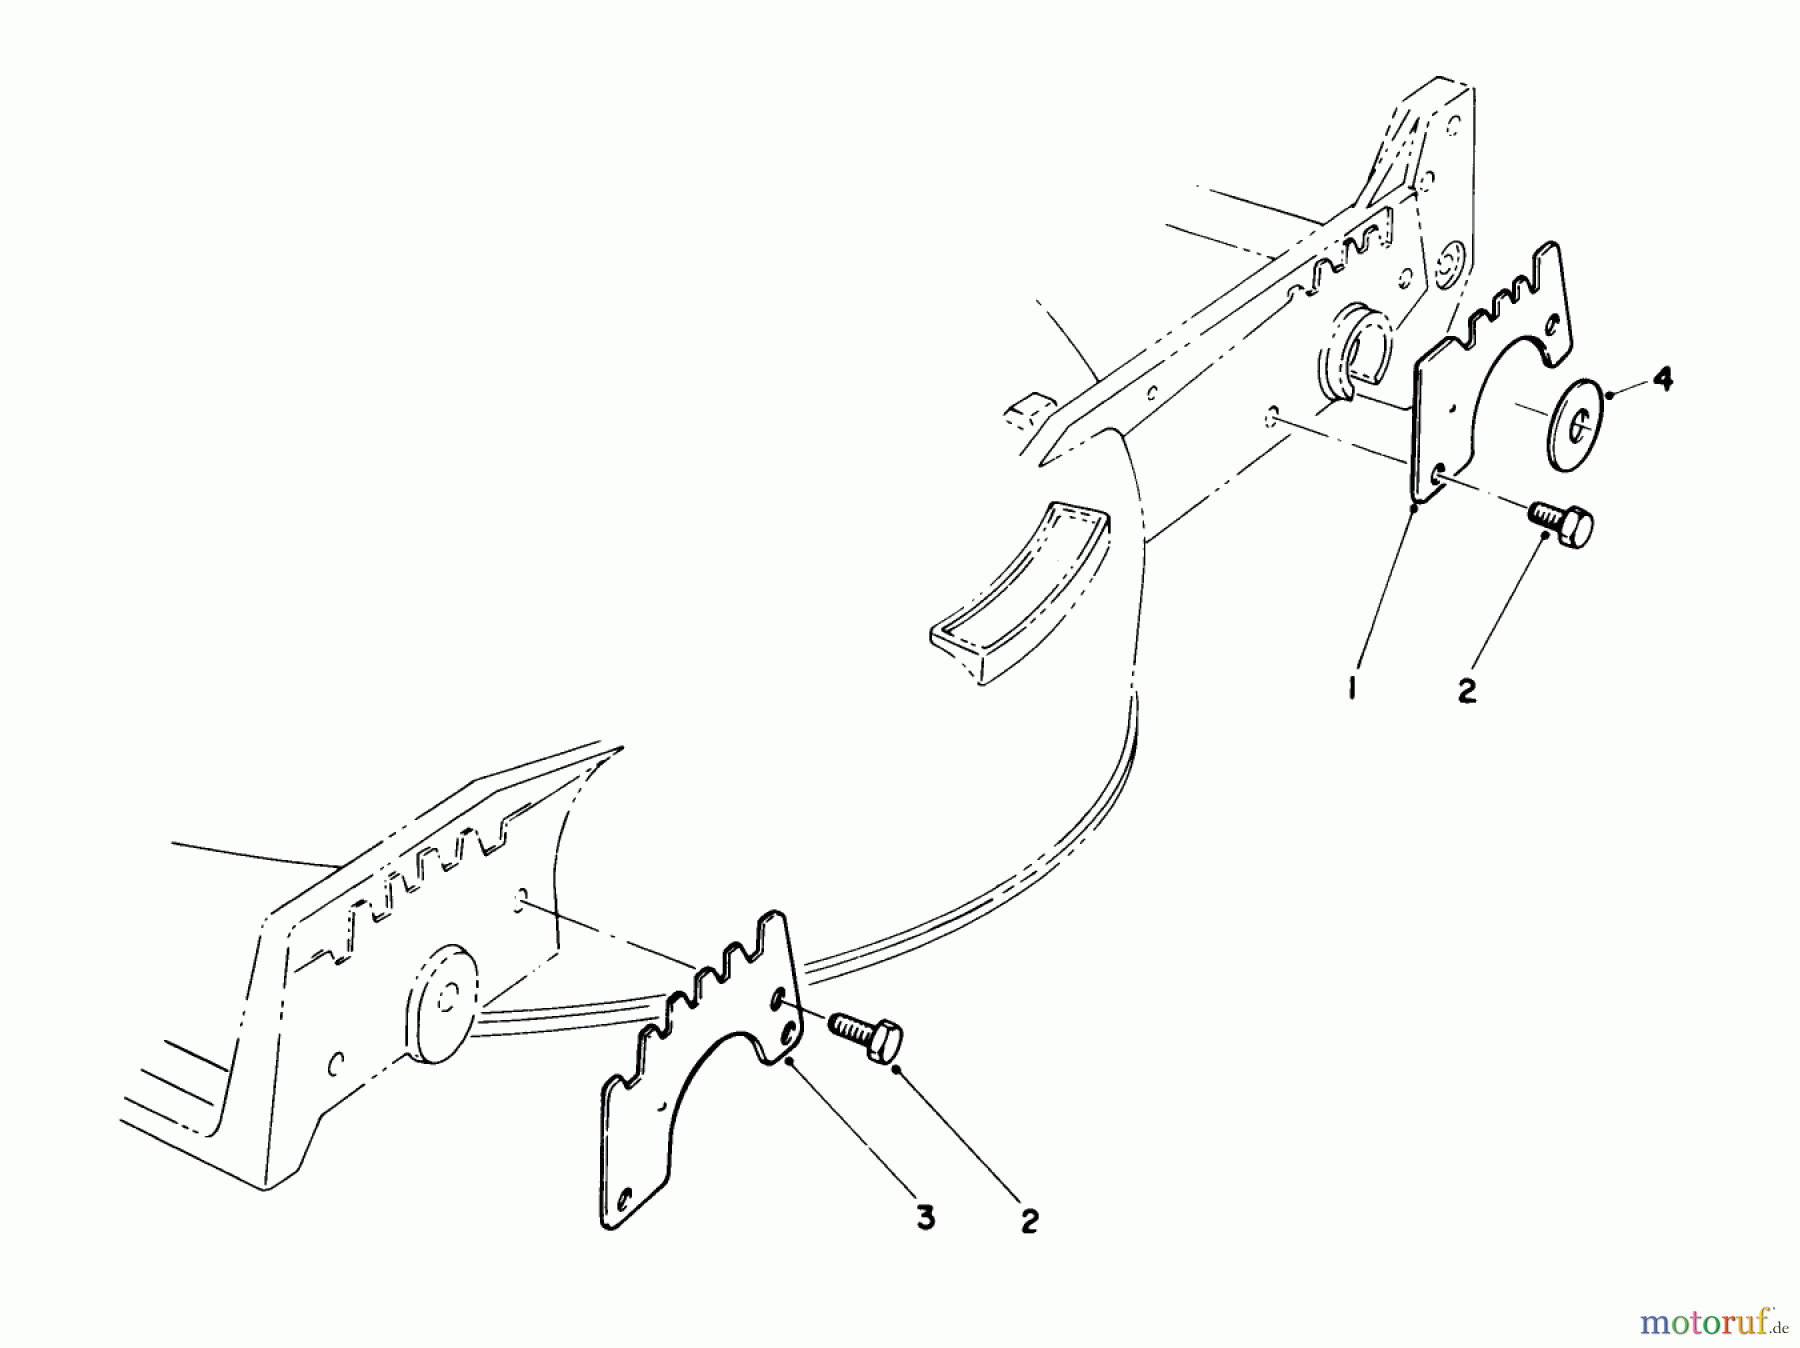  Toro Neu Mowers, Walk-Behind Seite 1 20581C - Toro Lawnmower, 1988 (8000001-8999999) WEAR PLATE KIT NO. 49-4080 (OPTIONAL)